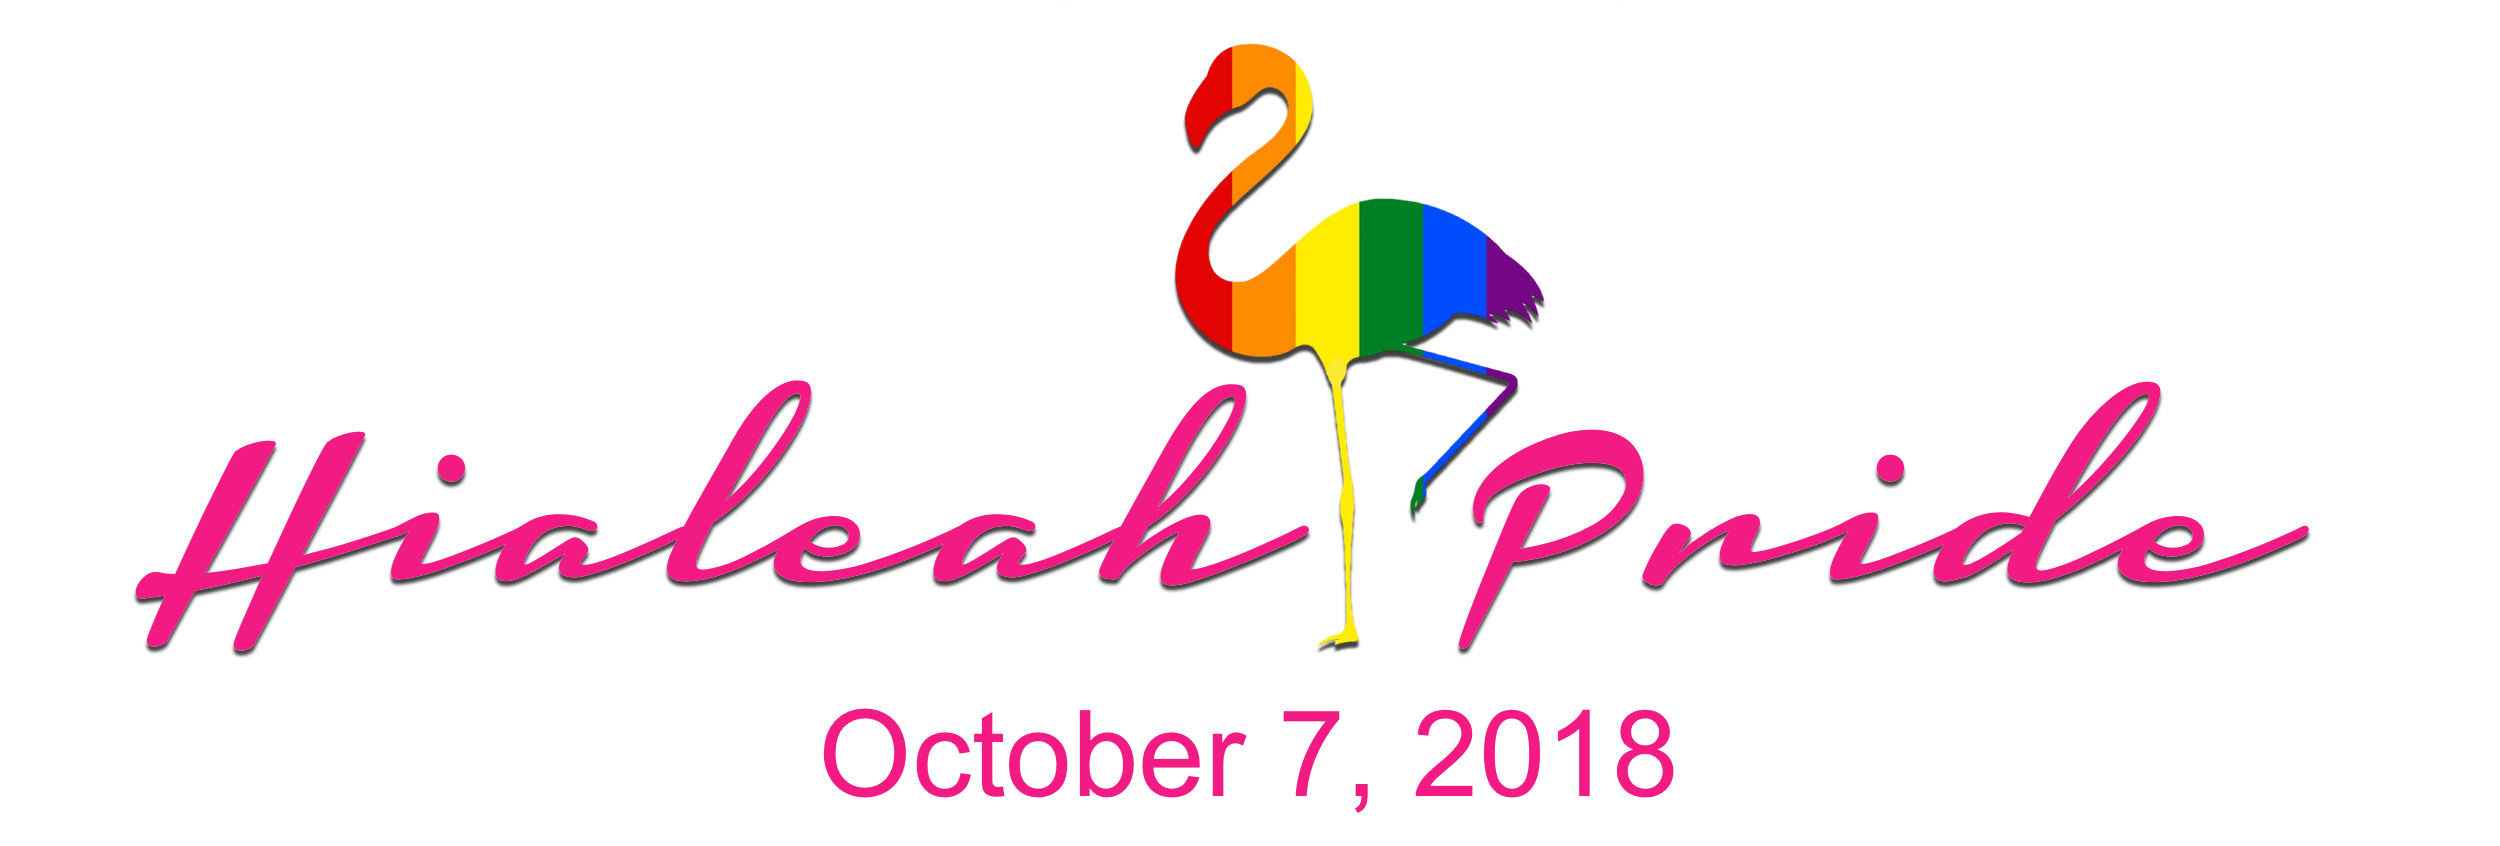 Hialeah vibrará este domingo con su primer evento de Pride